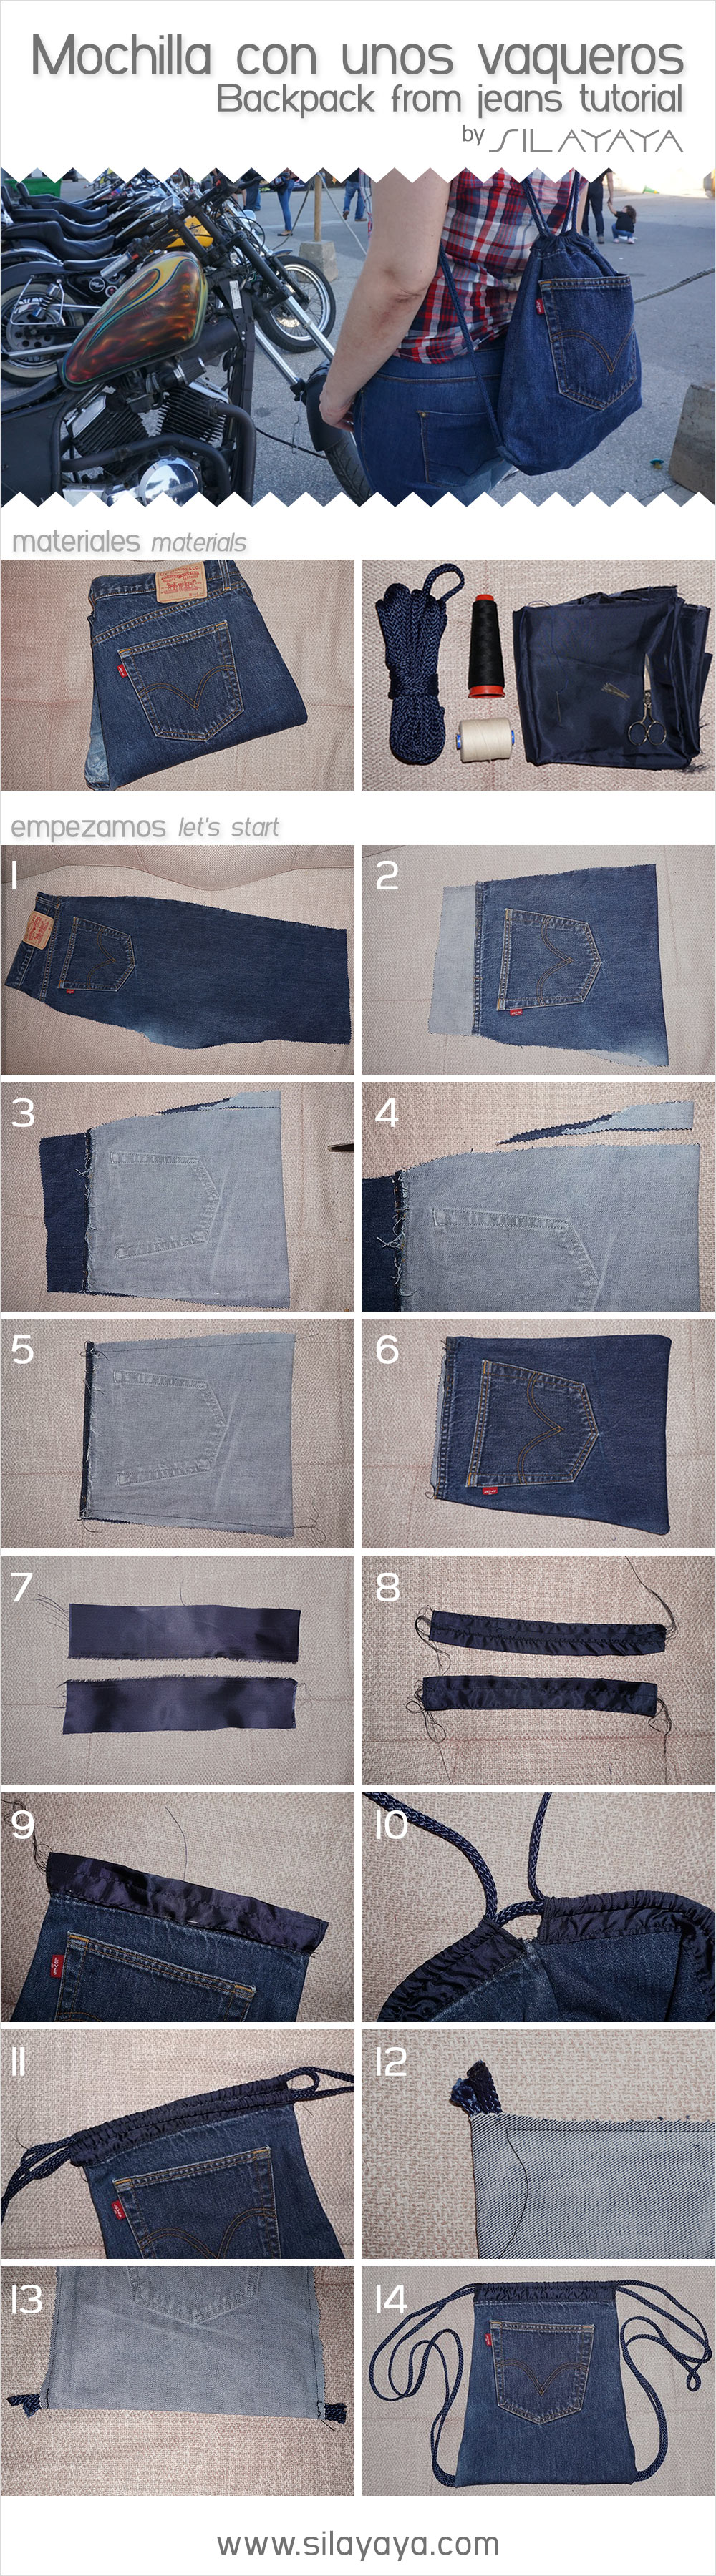 tutorial_mochila_vaquera_jeans_backpack